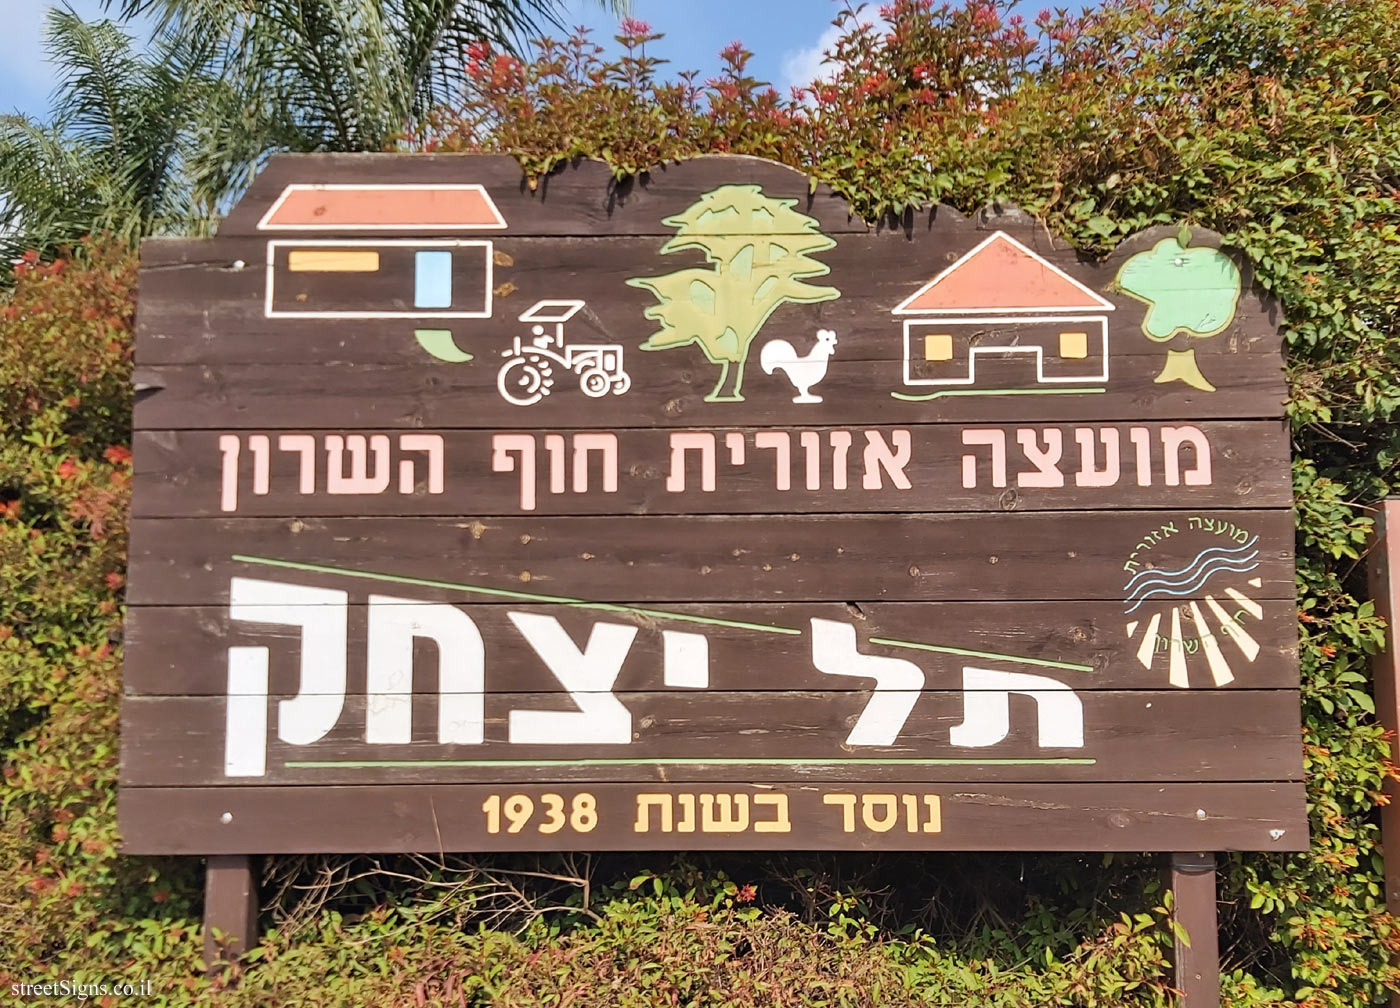 Tel Yitzhak - The Kibbutz entrance sign